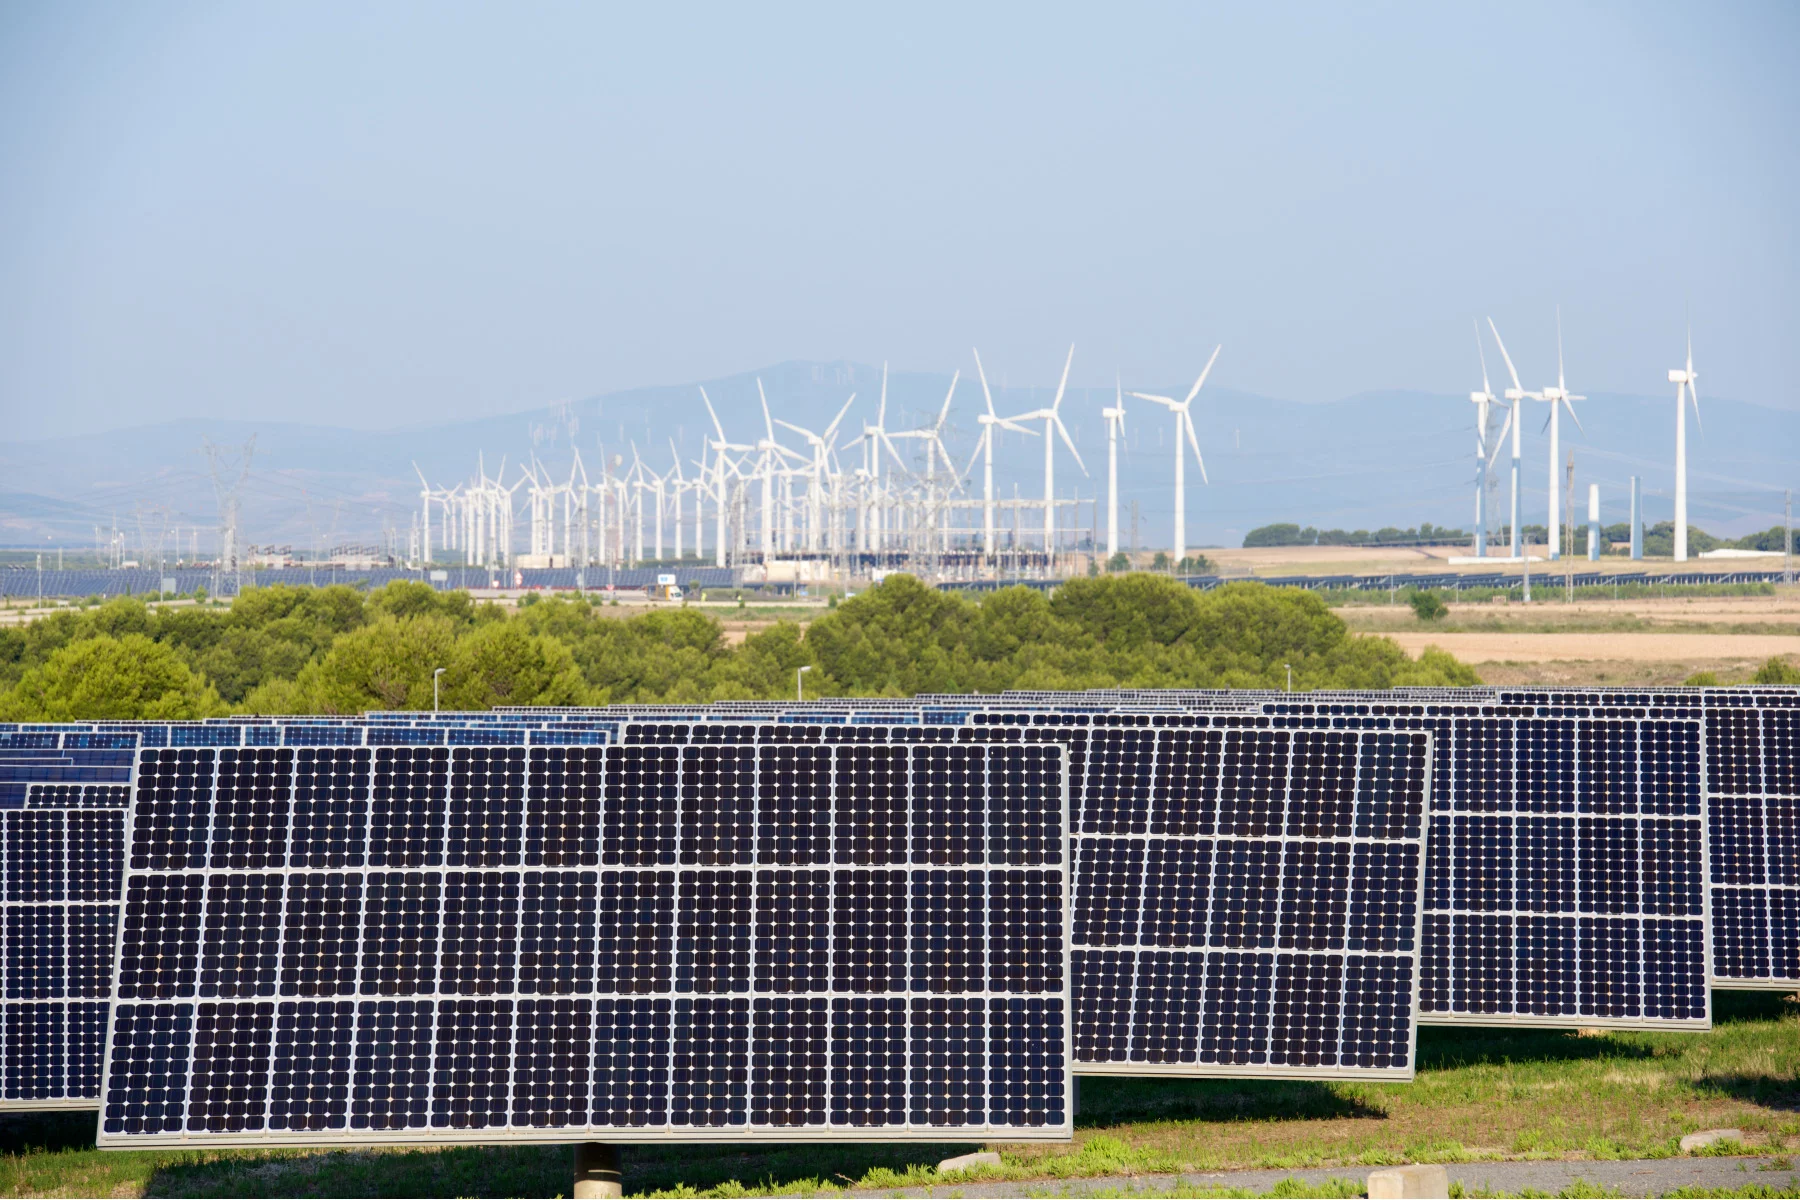 Renewable energy in Spain